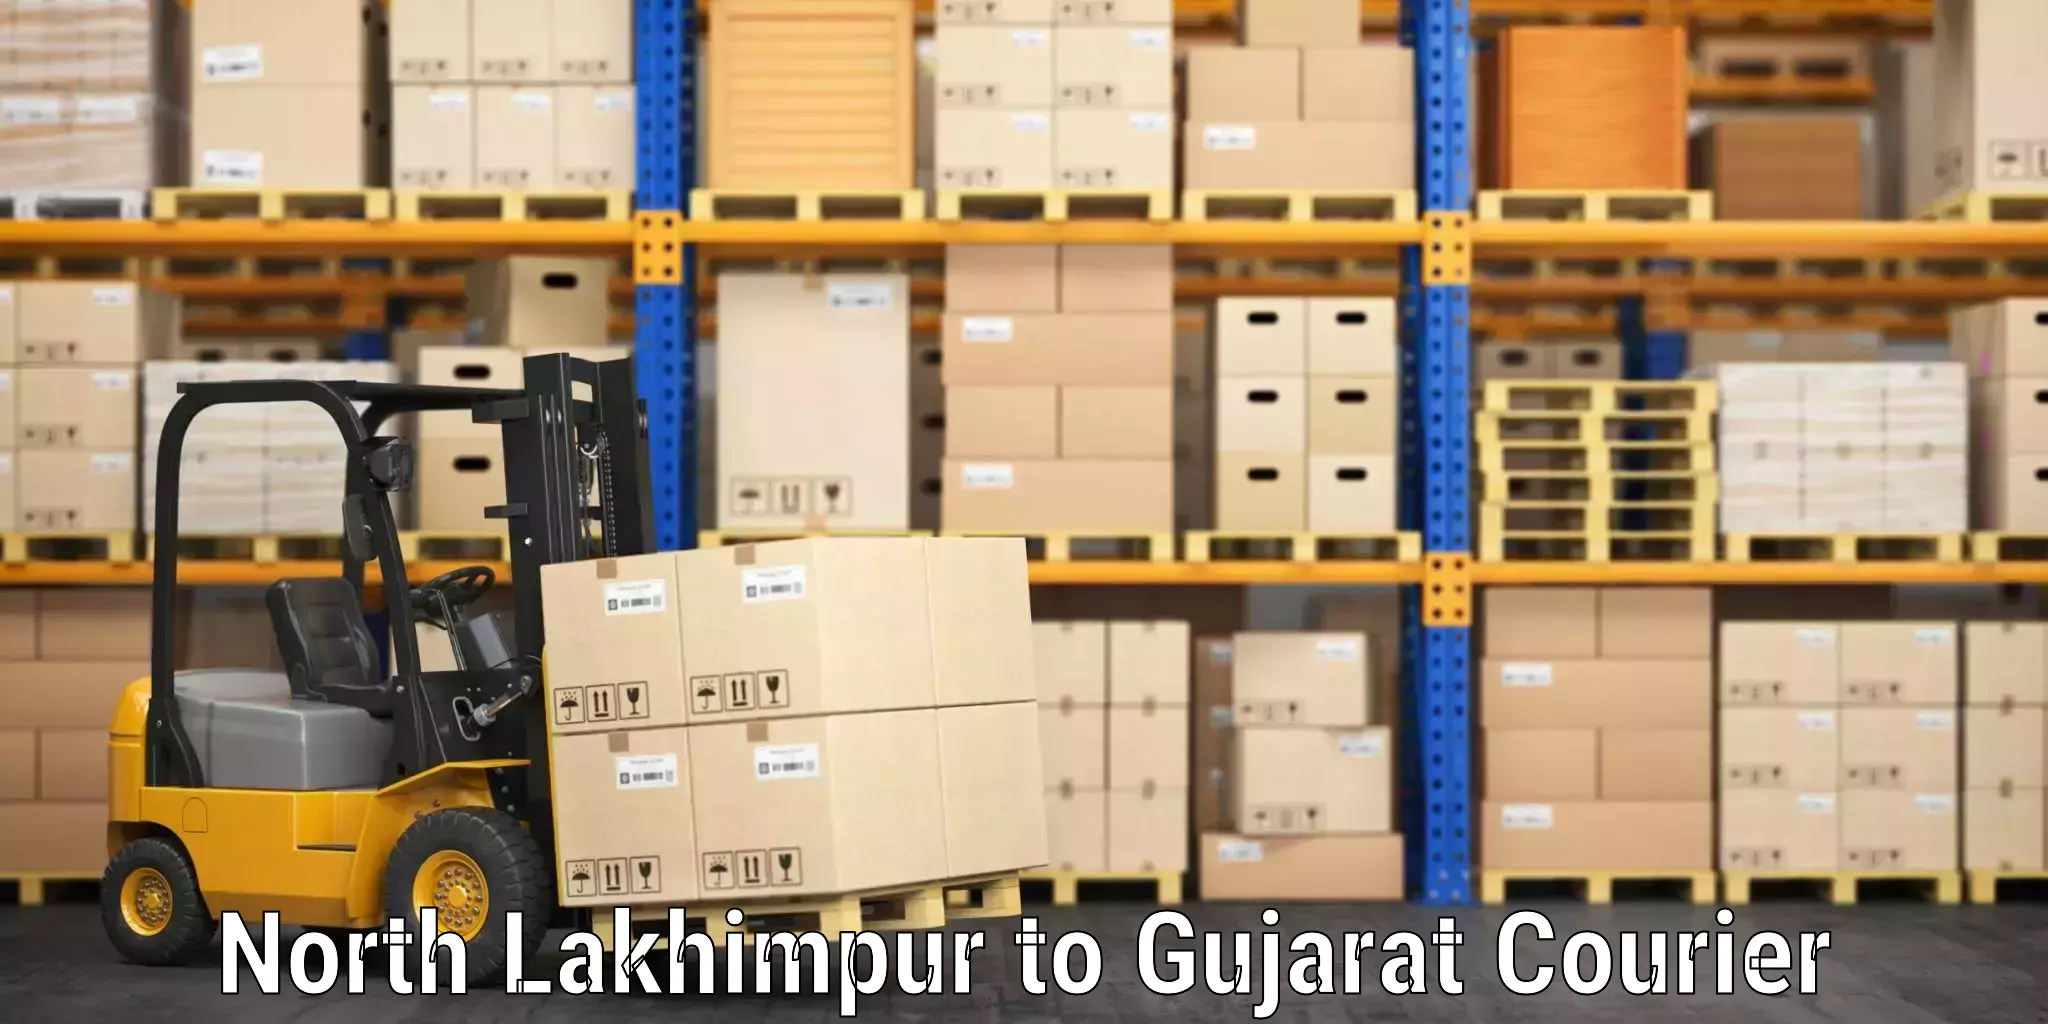 Baggage transport scheduler North Lakhimpur to Gujarat